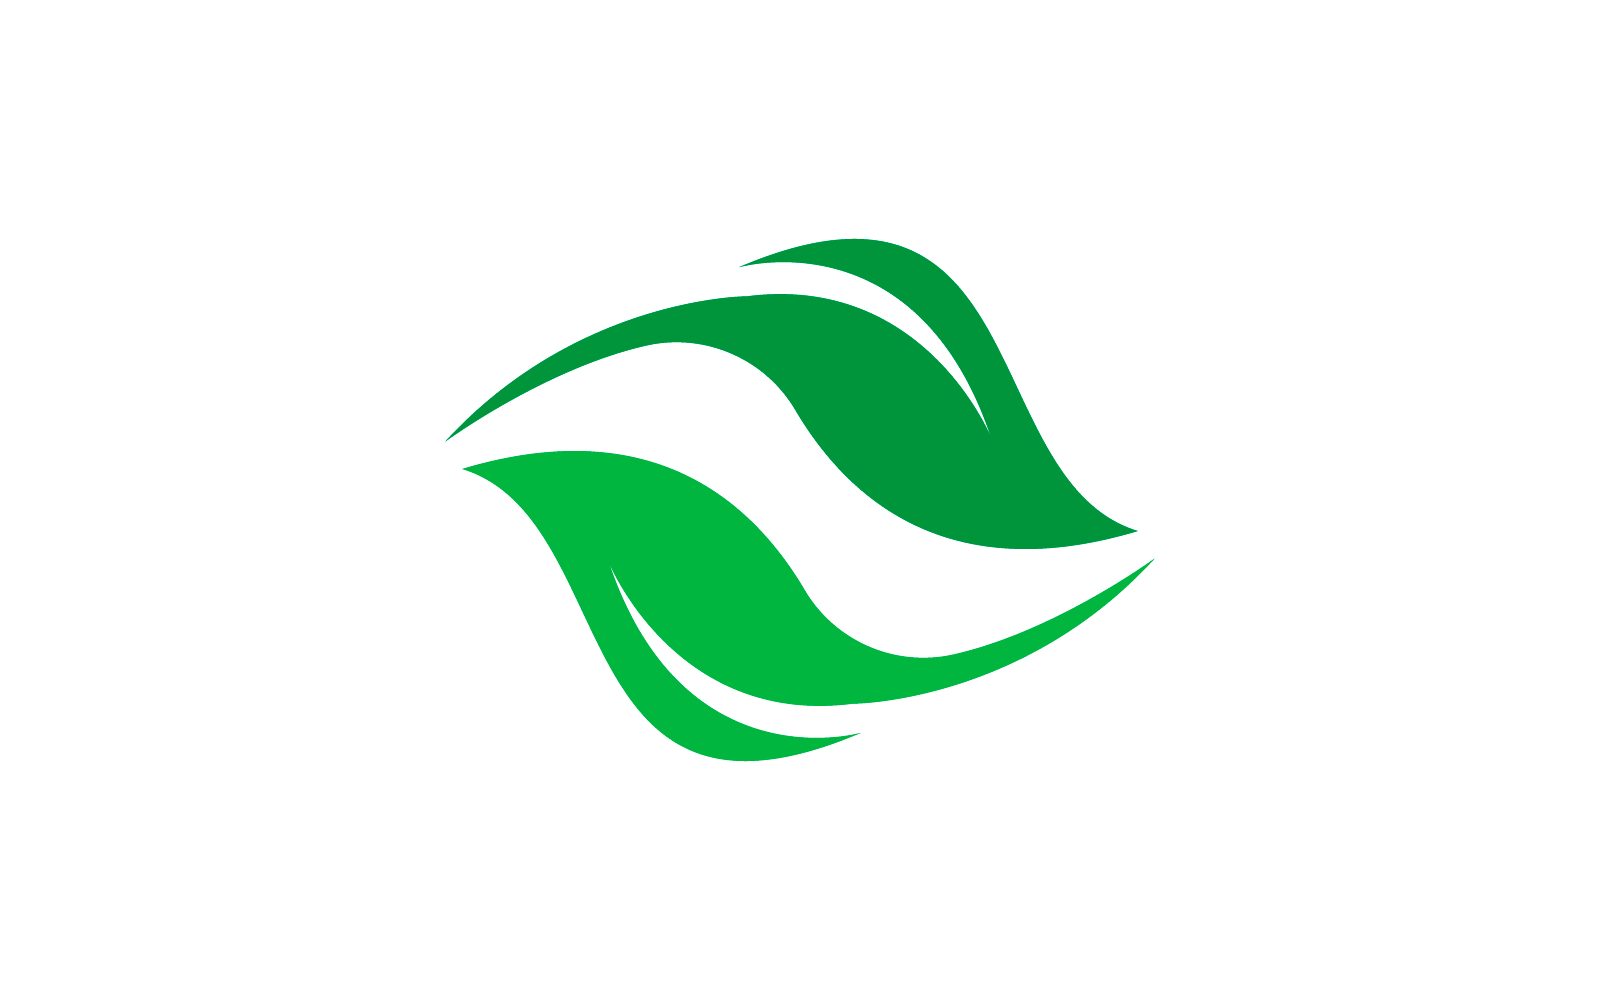 Green leaf illustration logo flat design template Logo Template